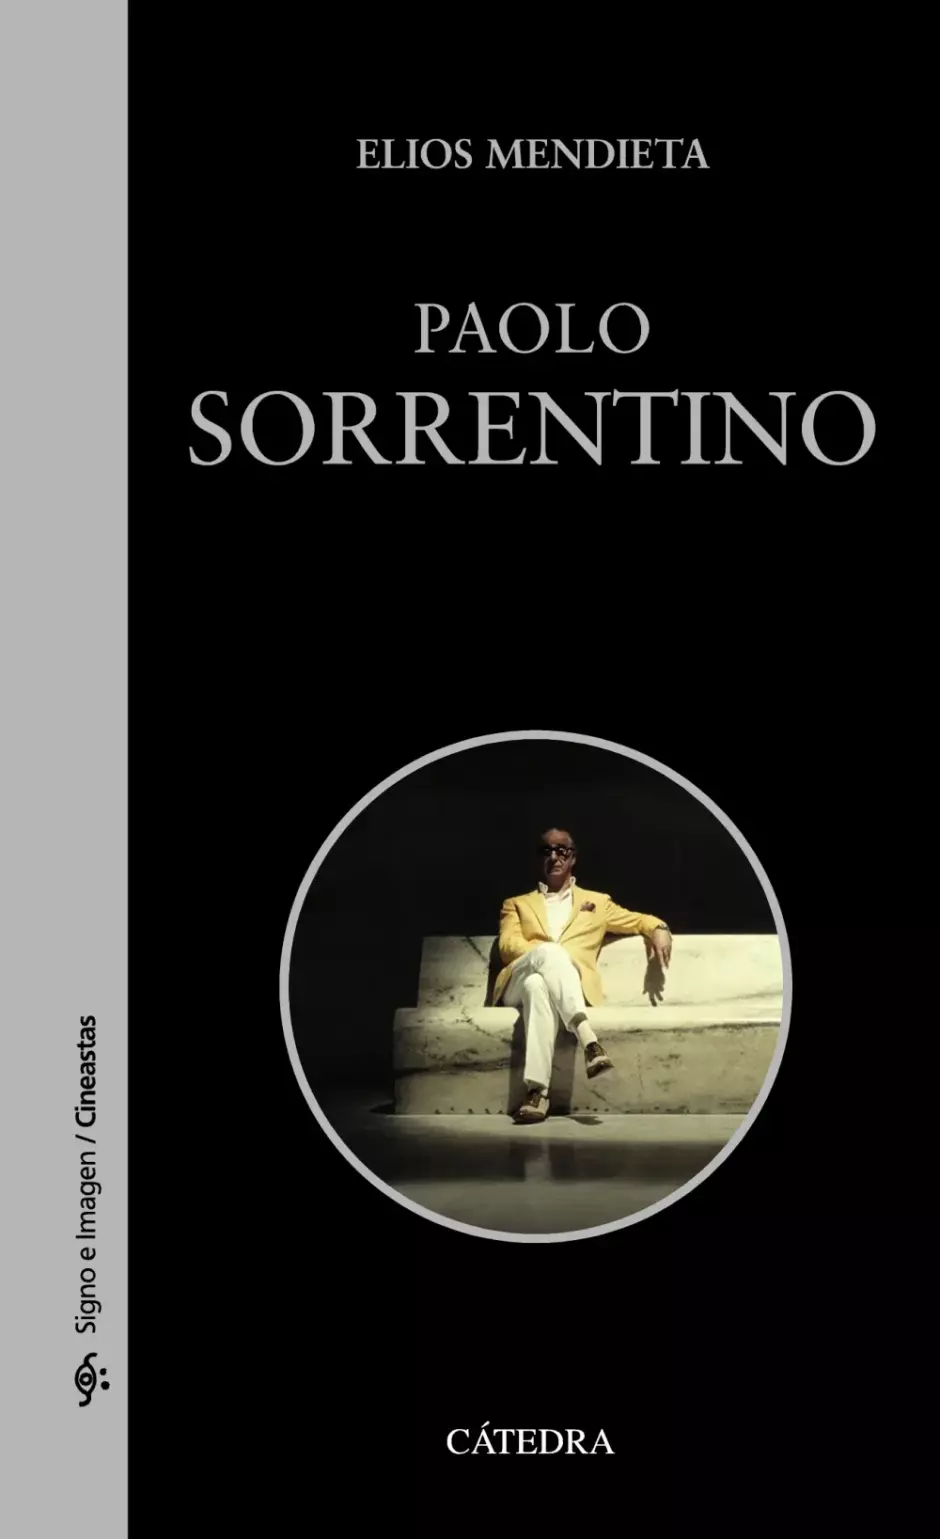 El libro 'Paolo Sorrentino' (editorial Cátedra), de Elios Mendieta